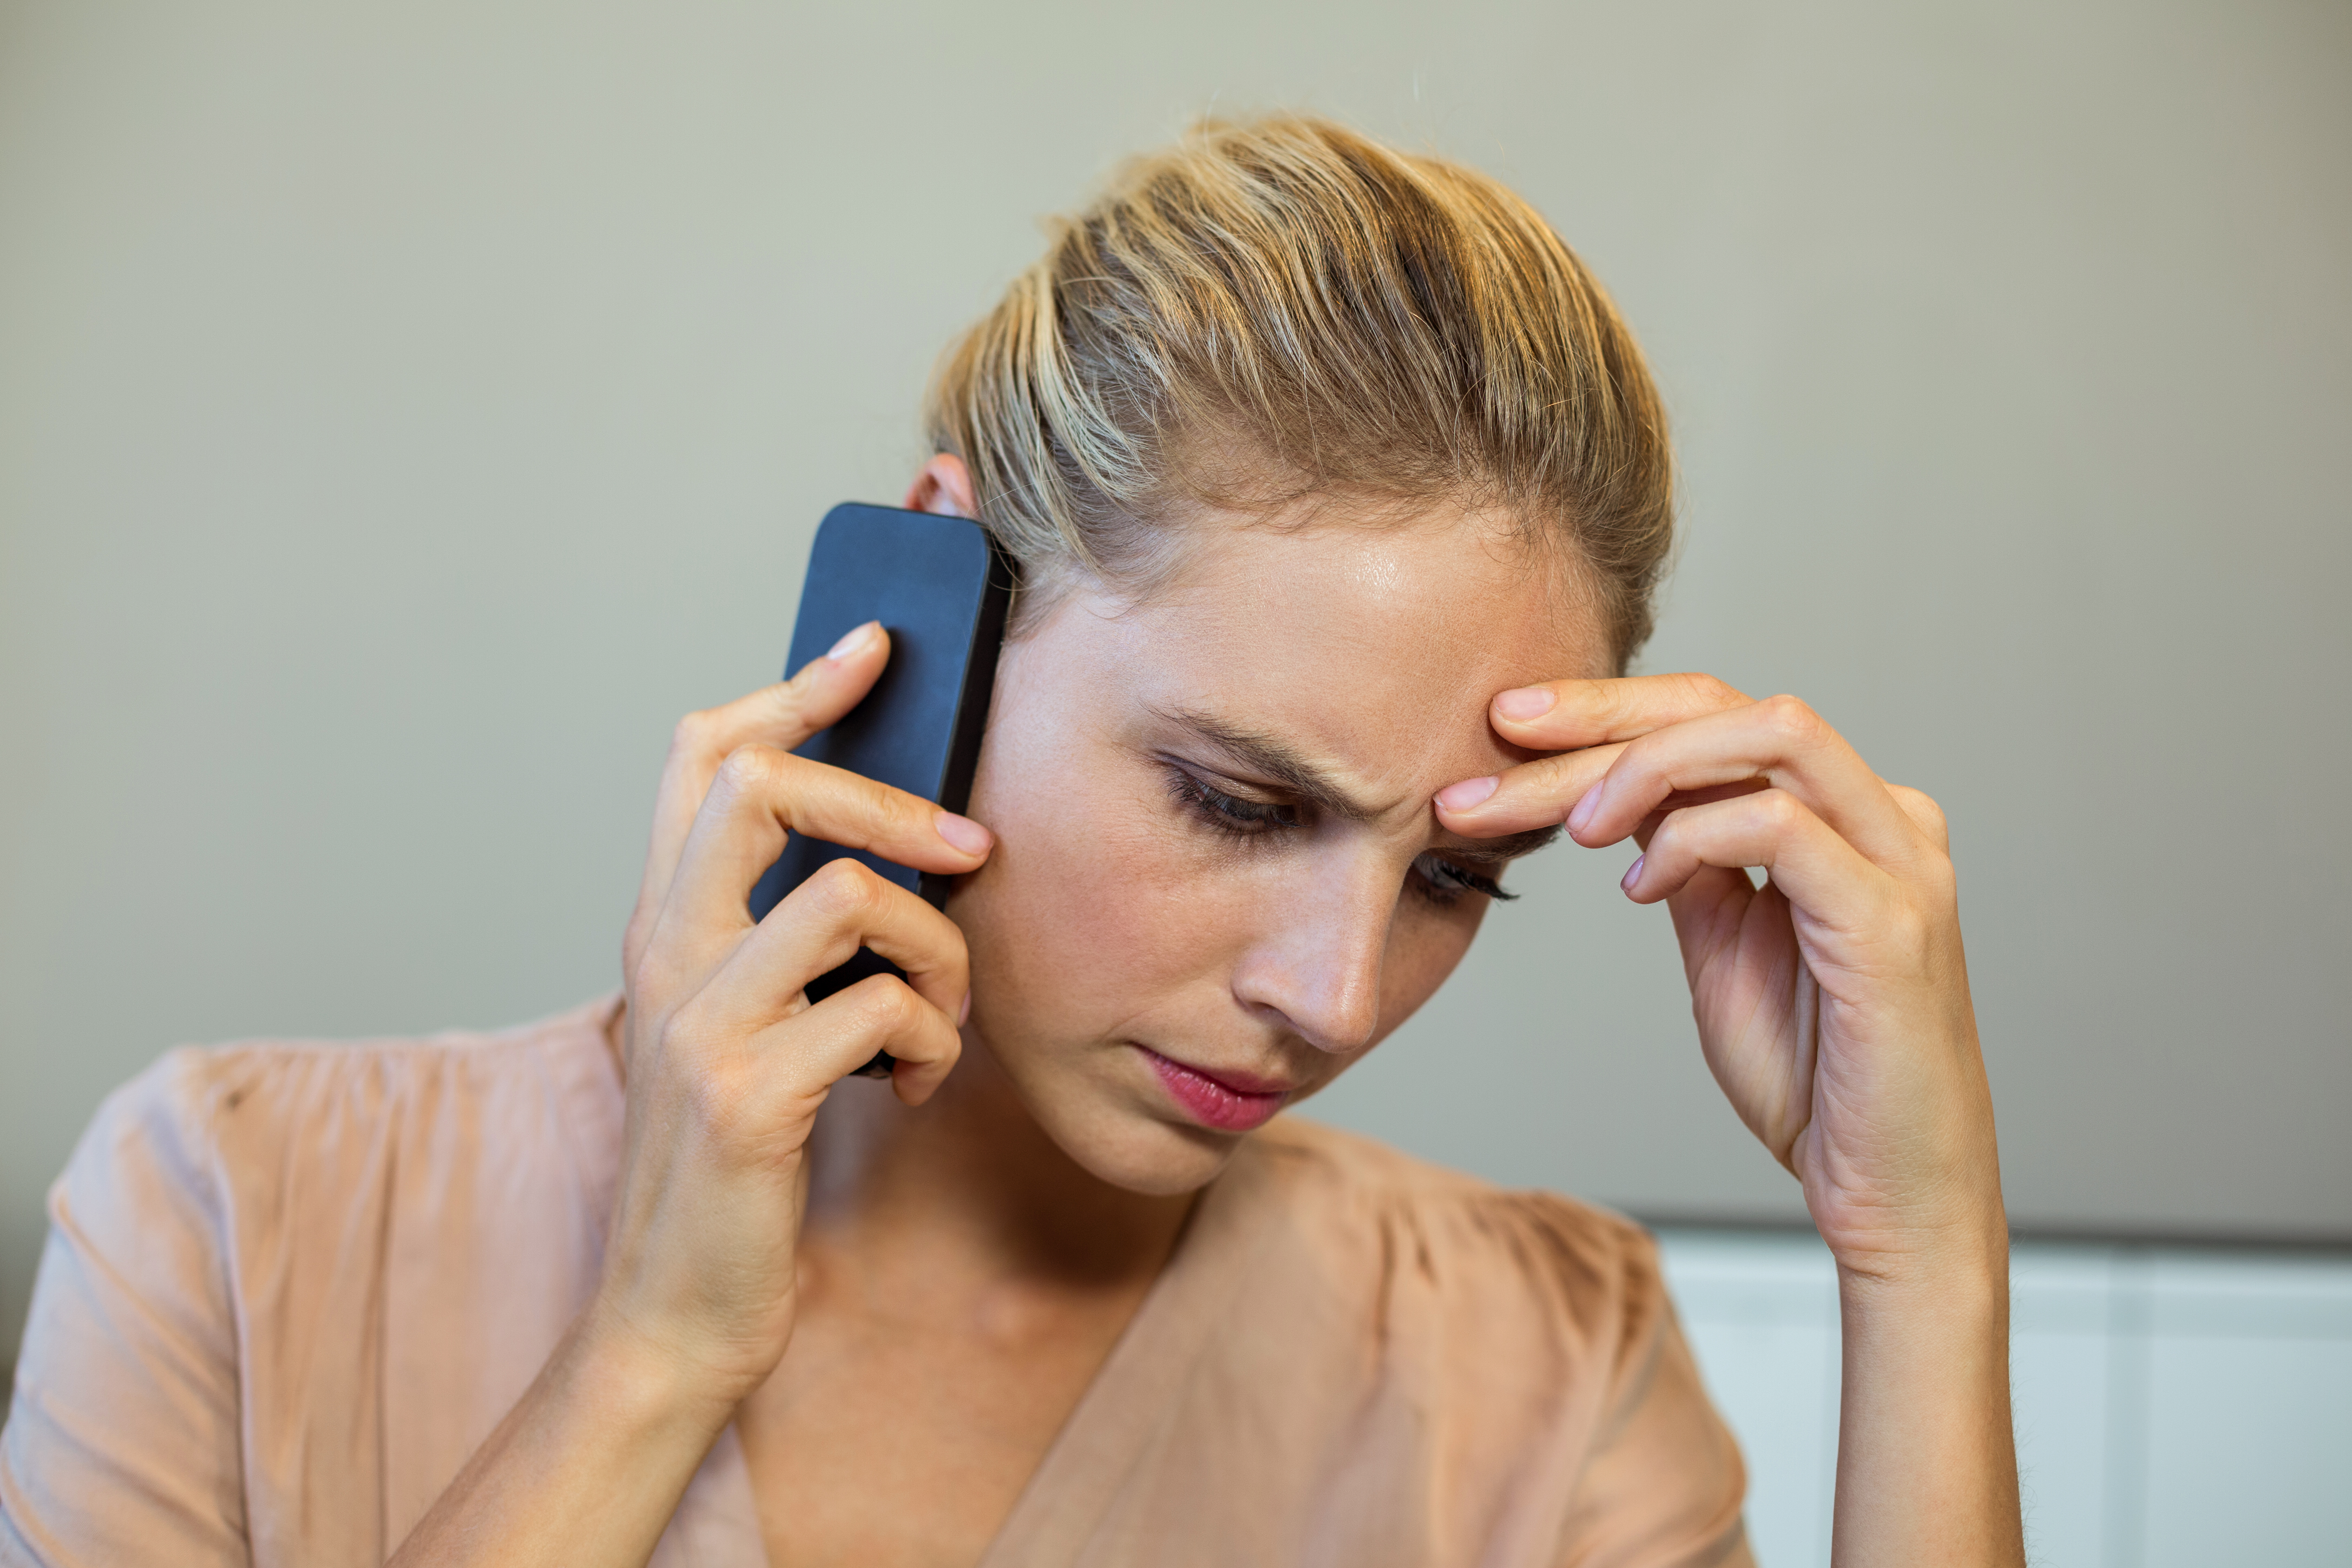 Eine Frau schaut frustriert, während sie telefoniert | Quelle: Shutterstock